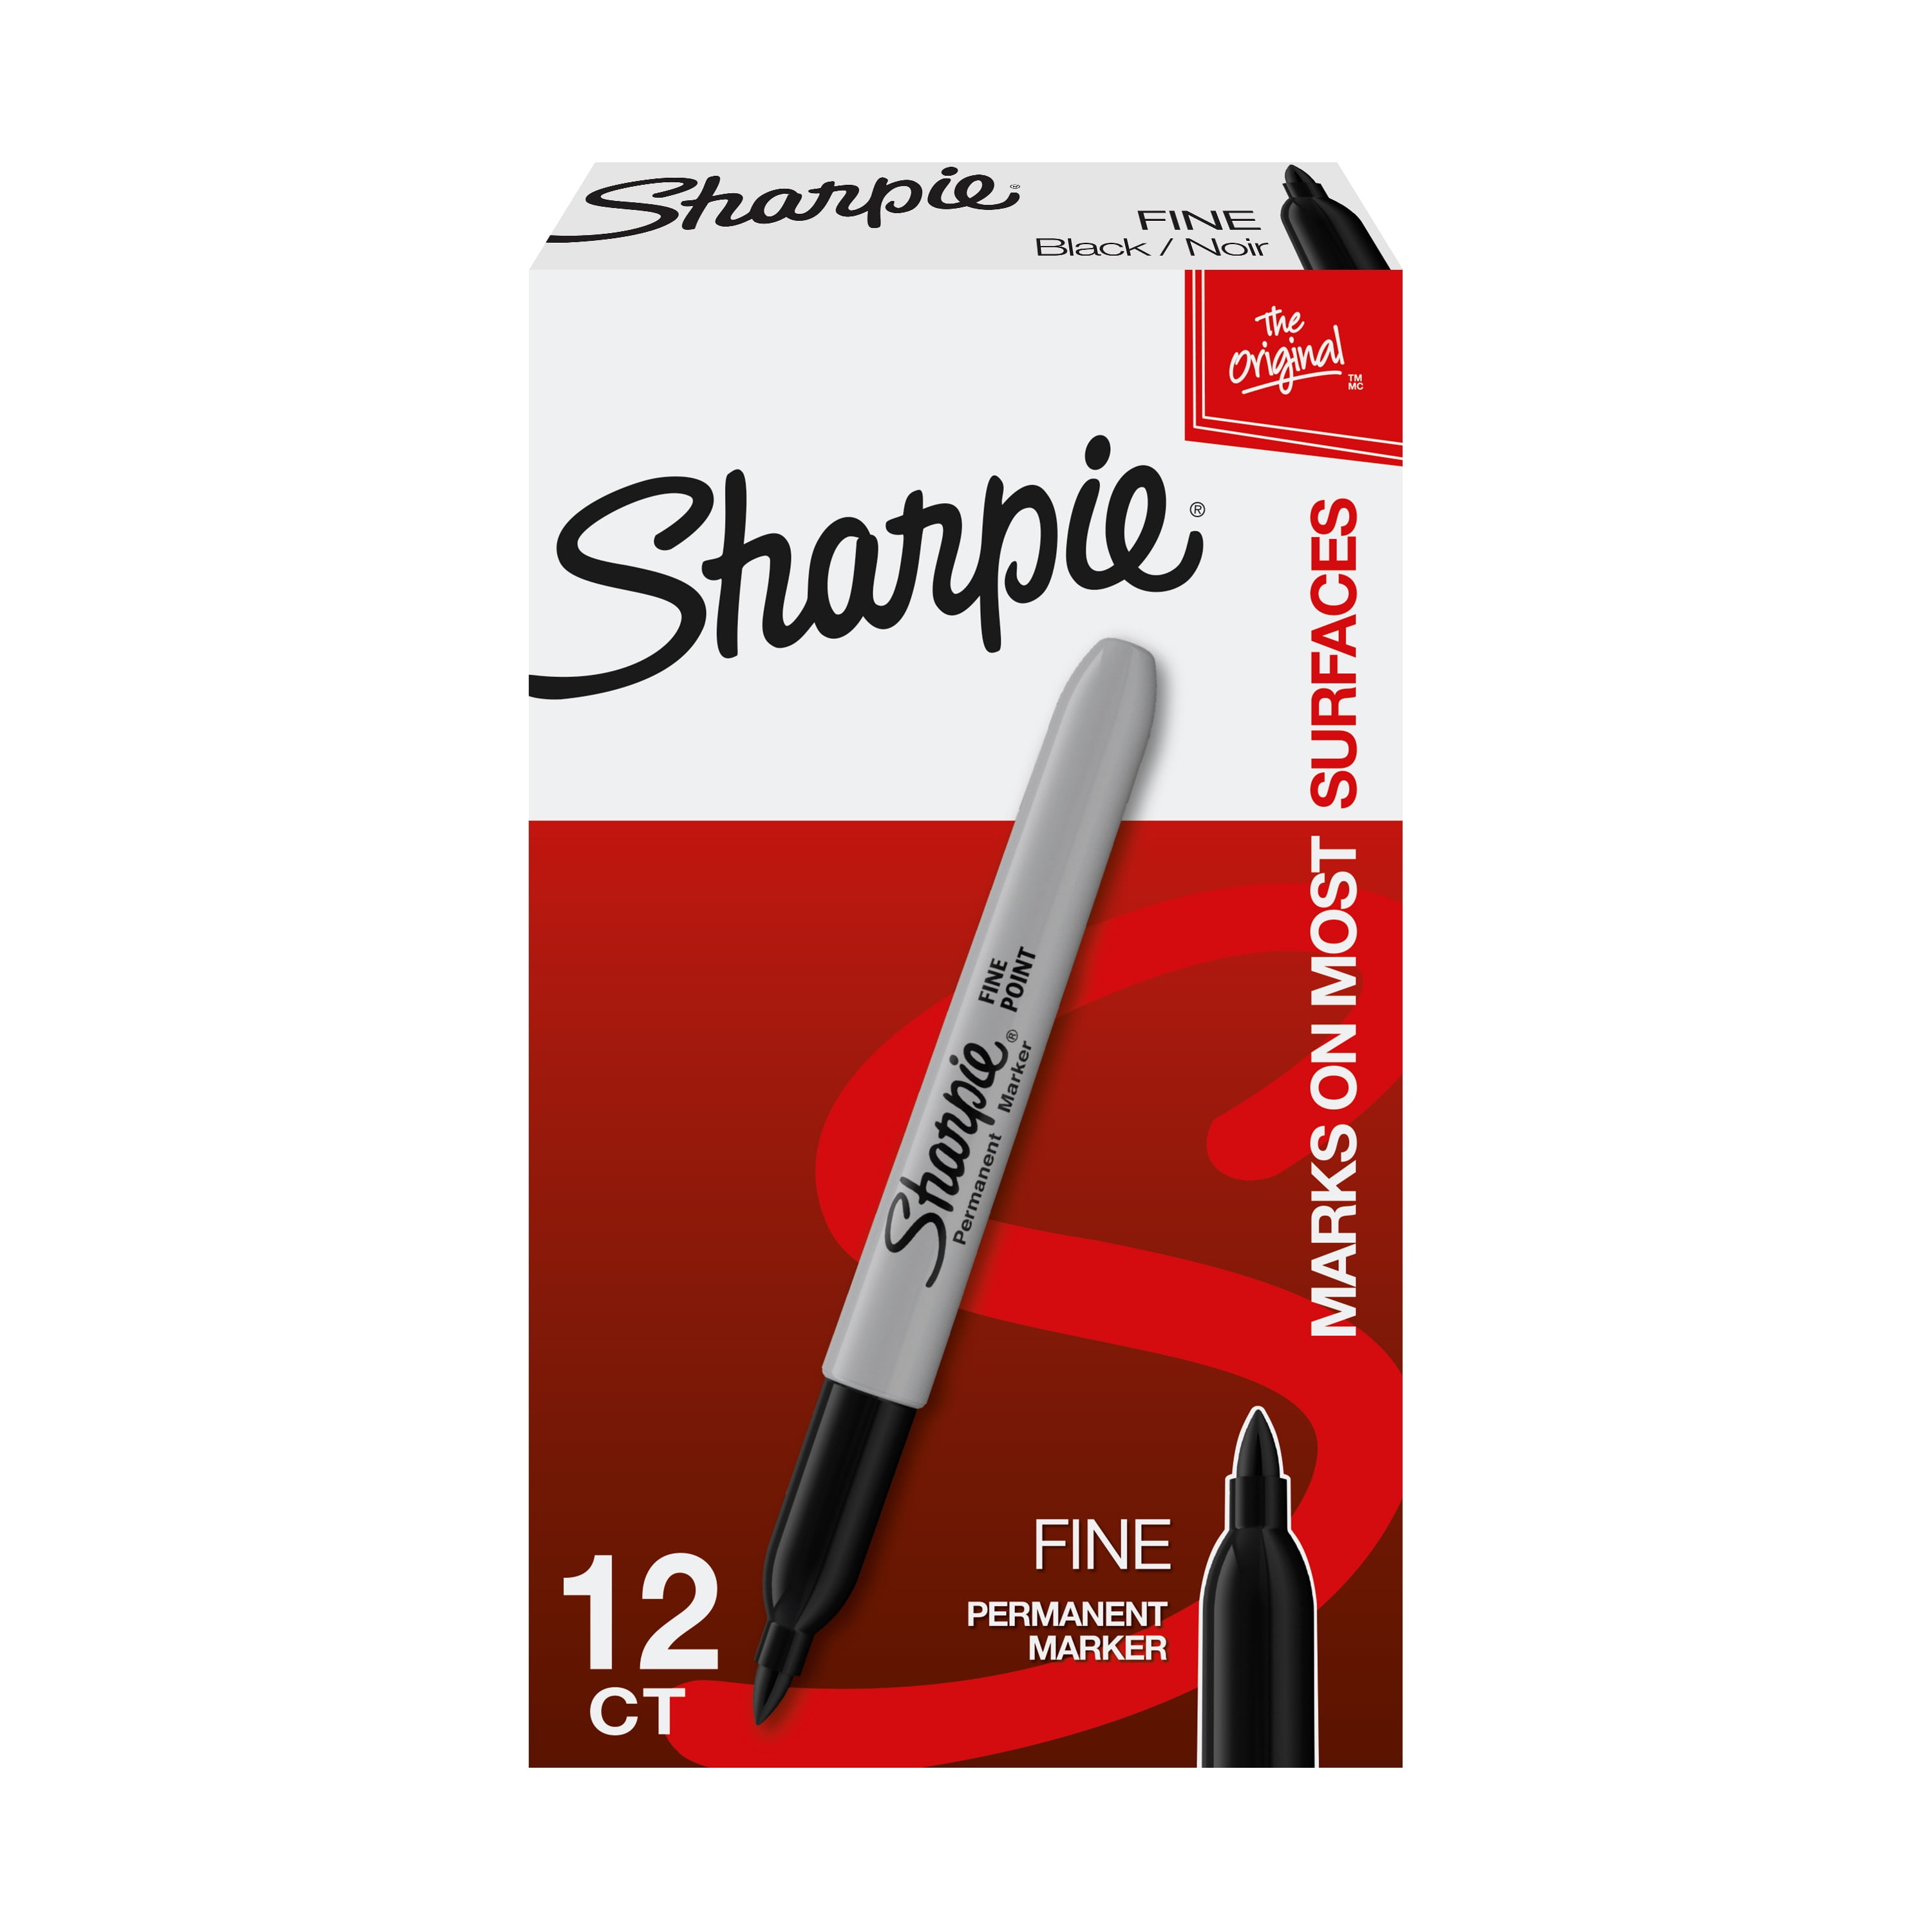 Sharpie Black Sharpie Fine Point Tip Permanent Marker Pens 2,4,6,8,10,12,24,50,100 